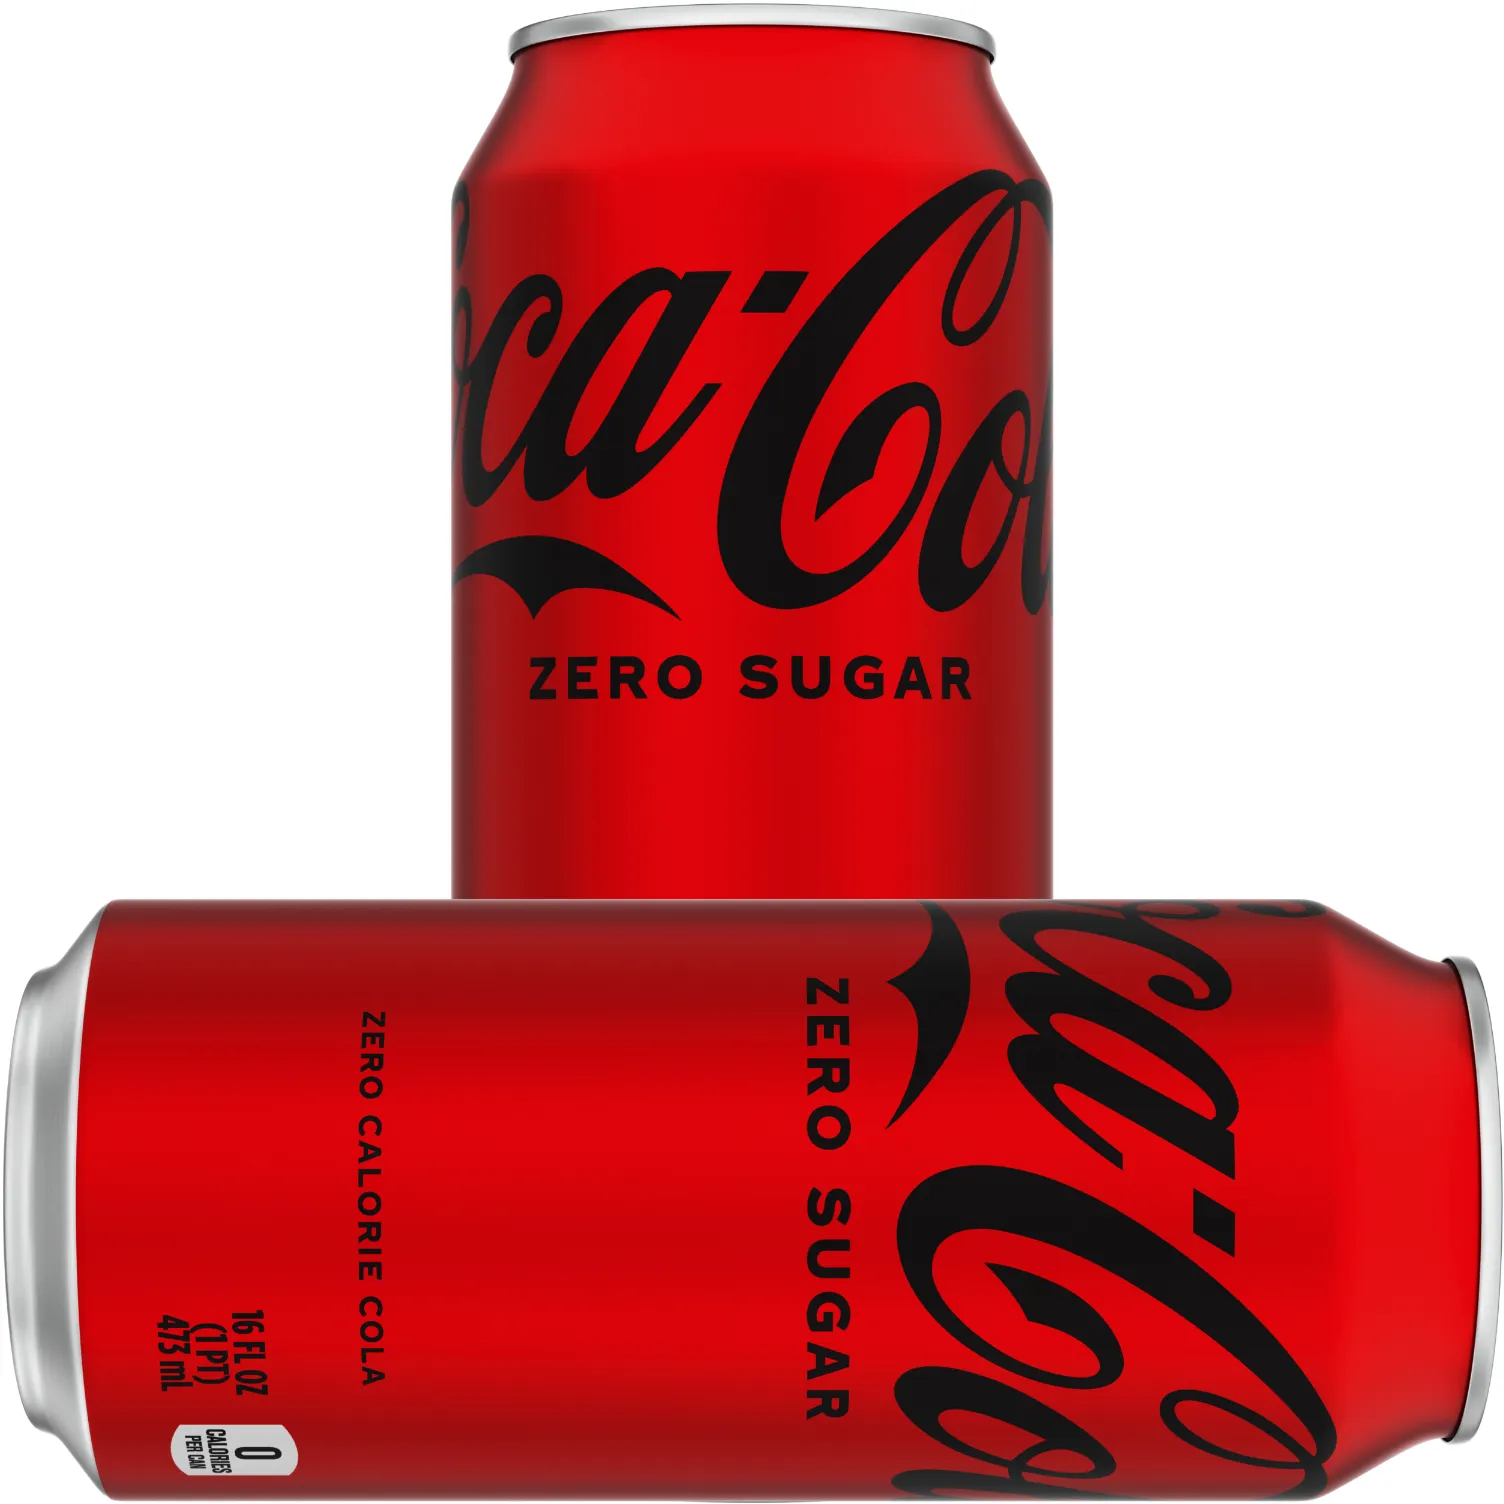 Free Coca-Cola Coke Zero